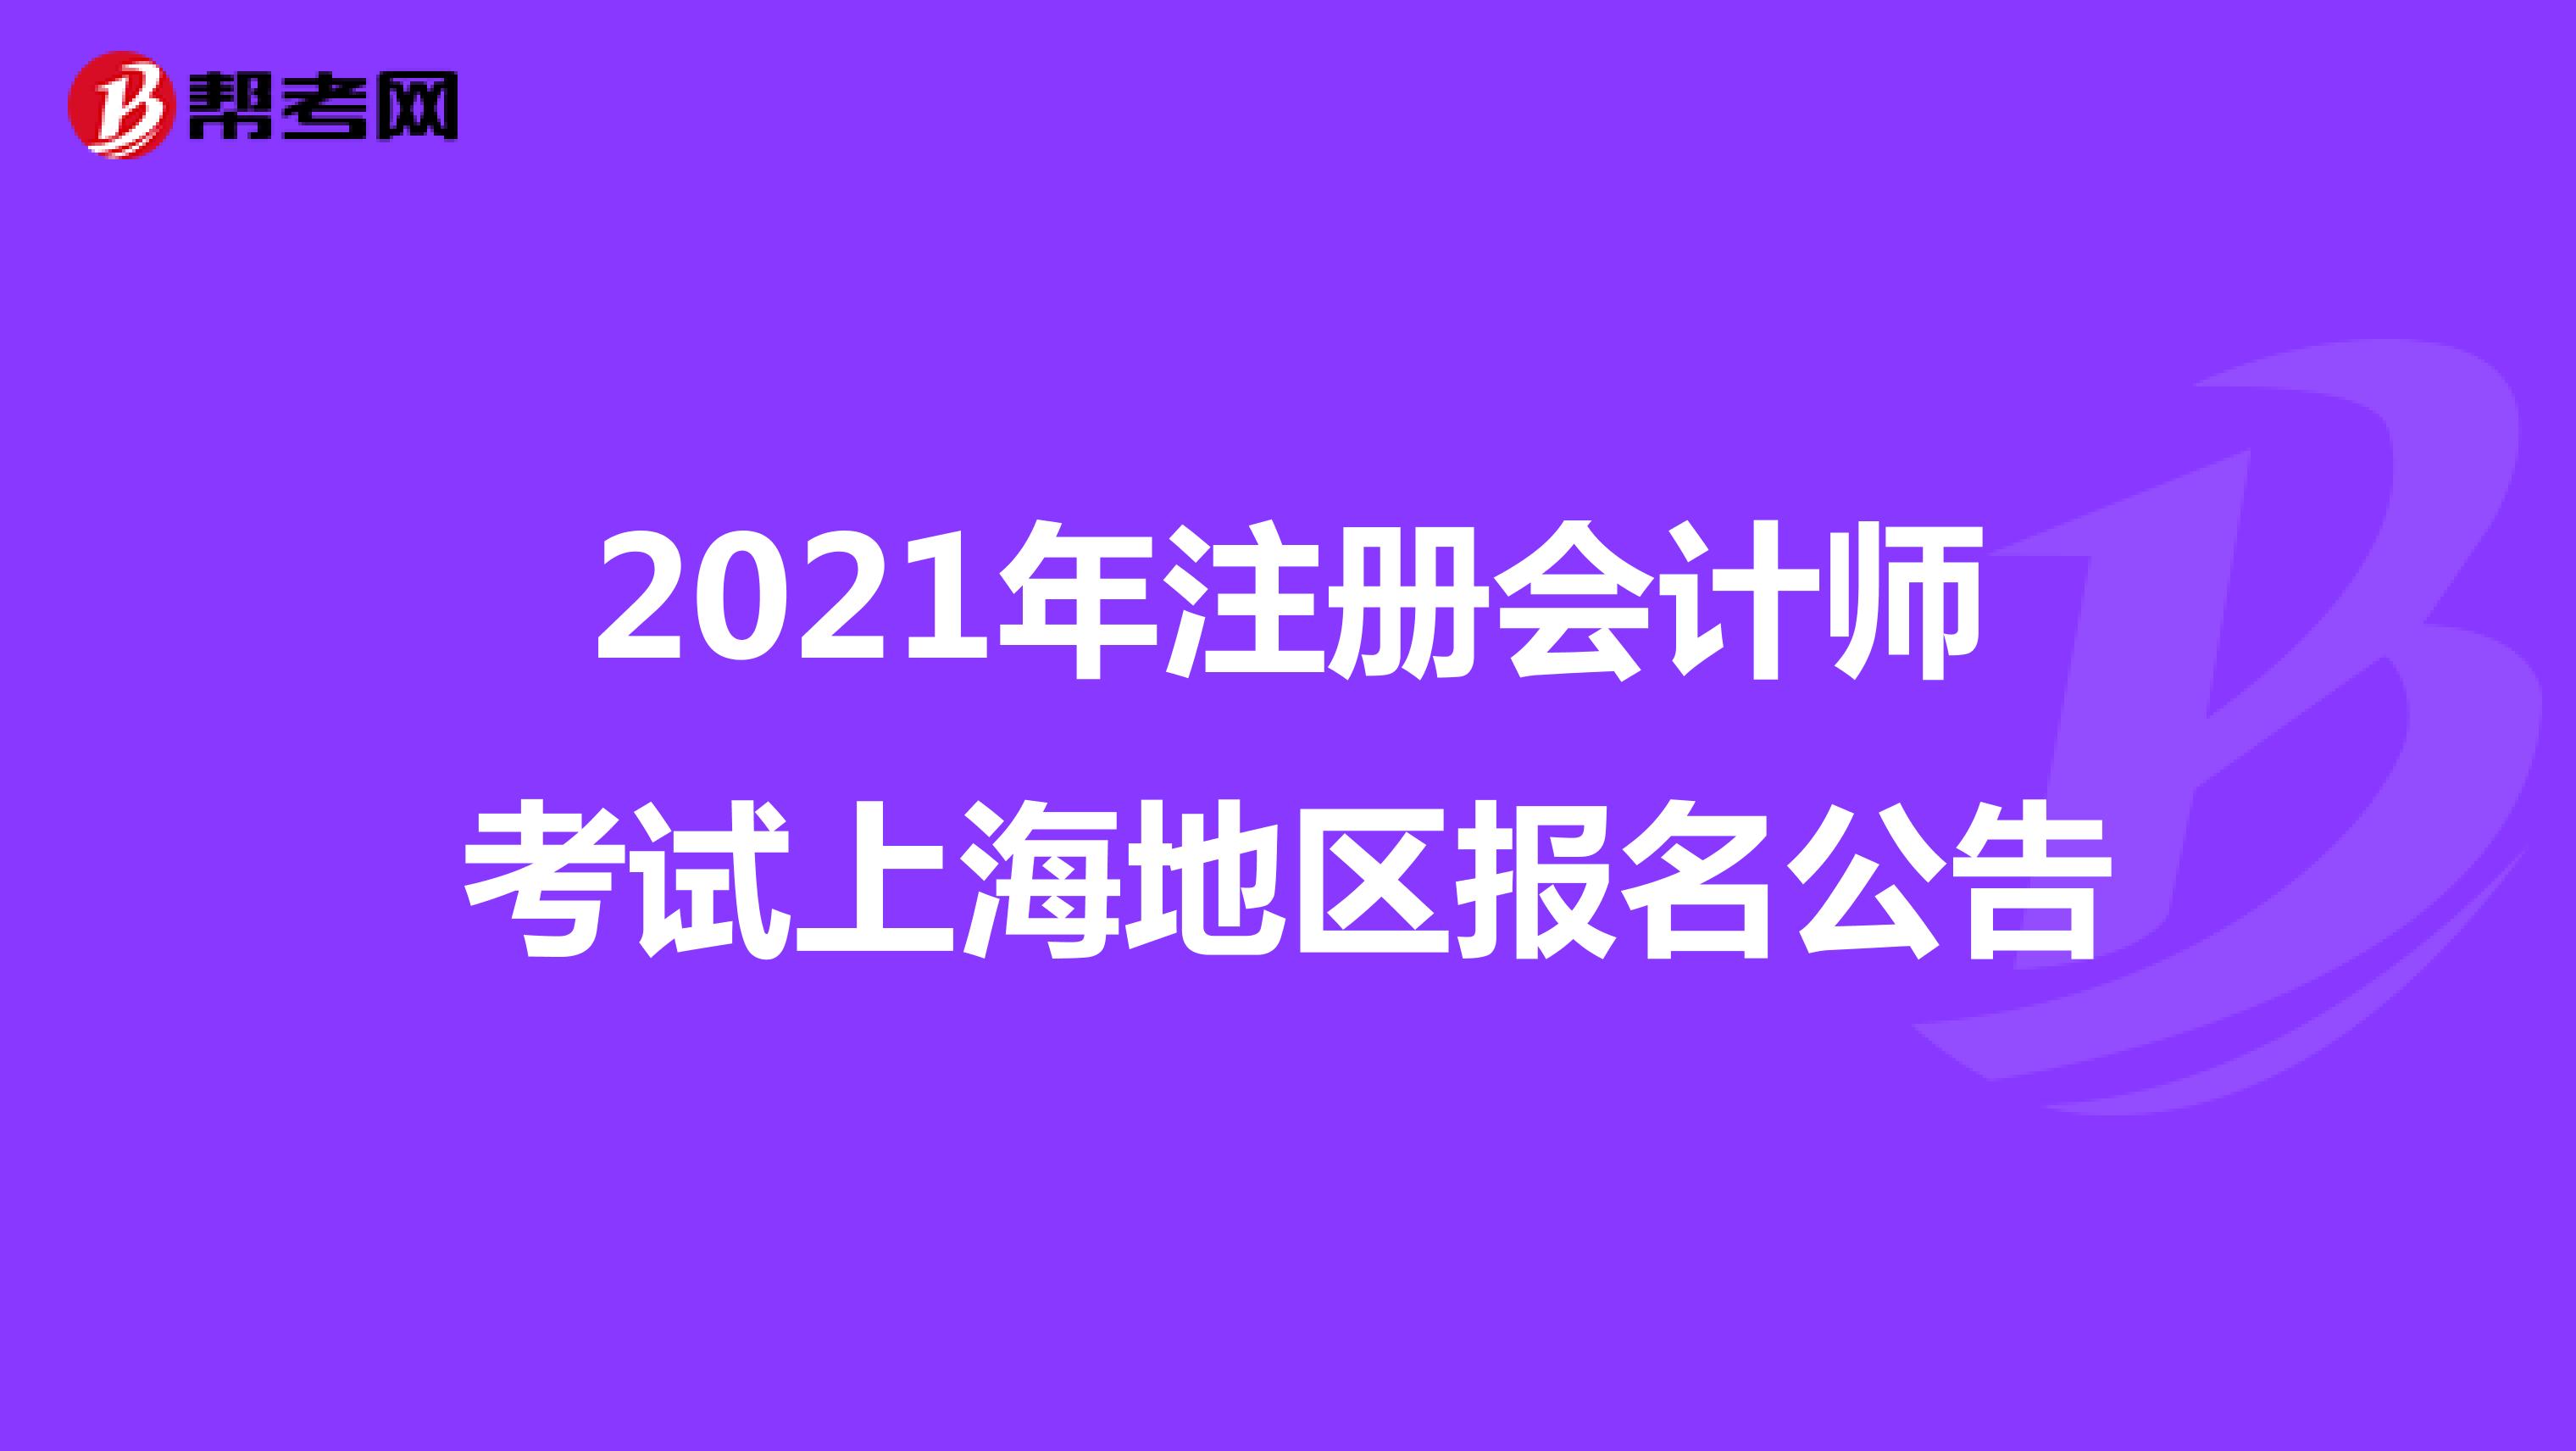 2021年注册会计师考试上海地区报名公告